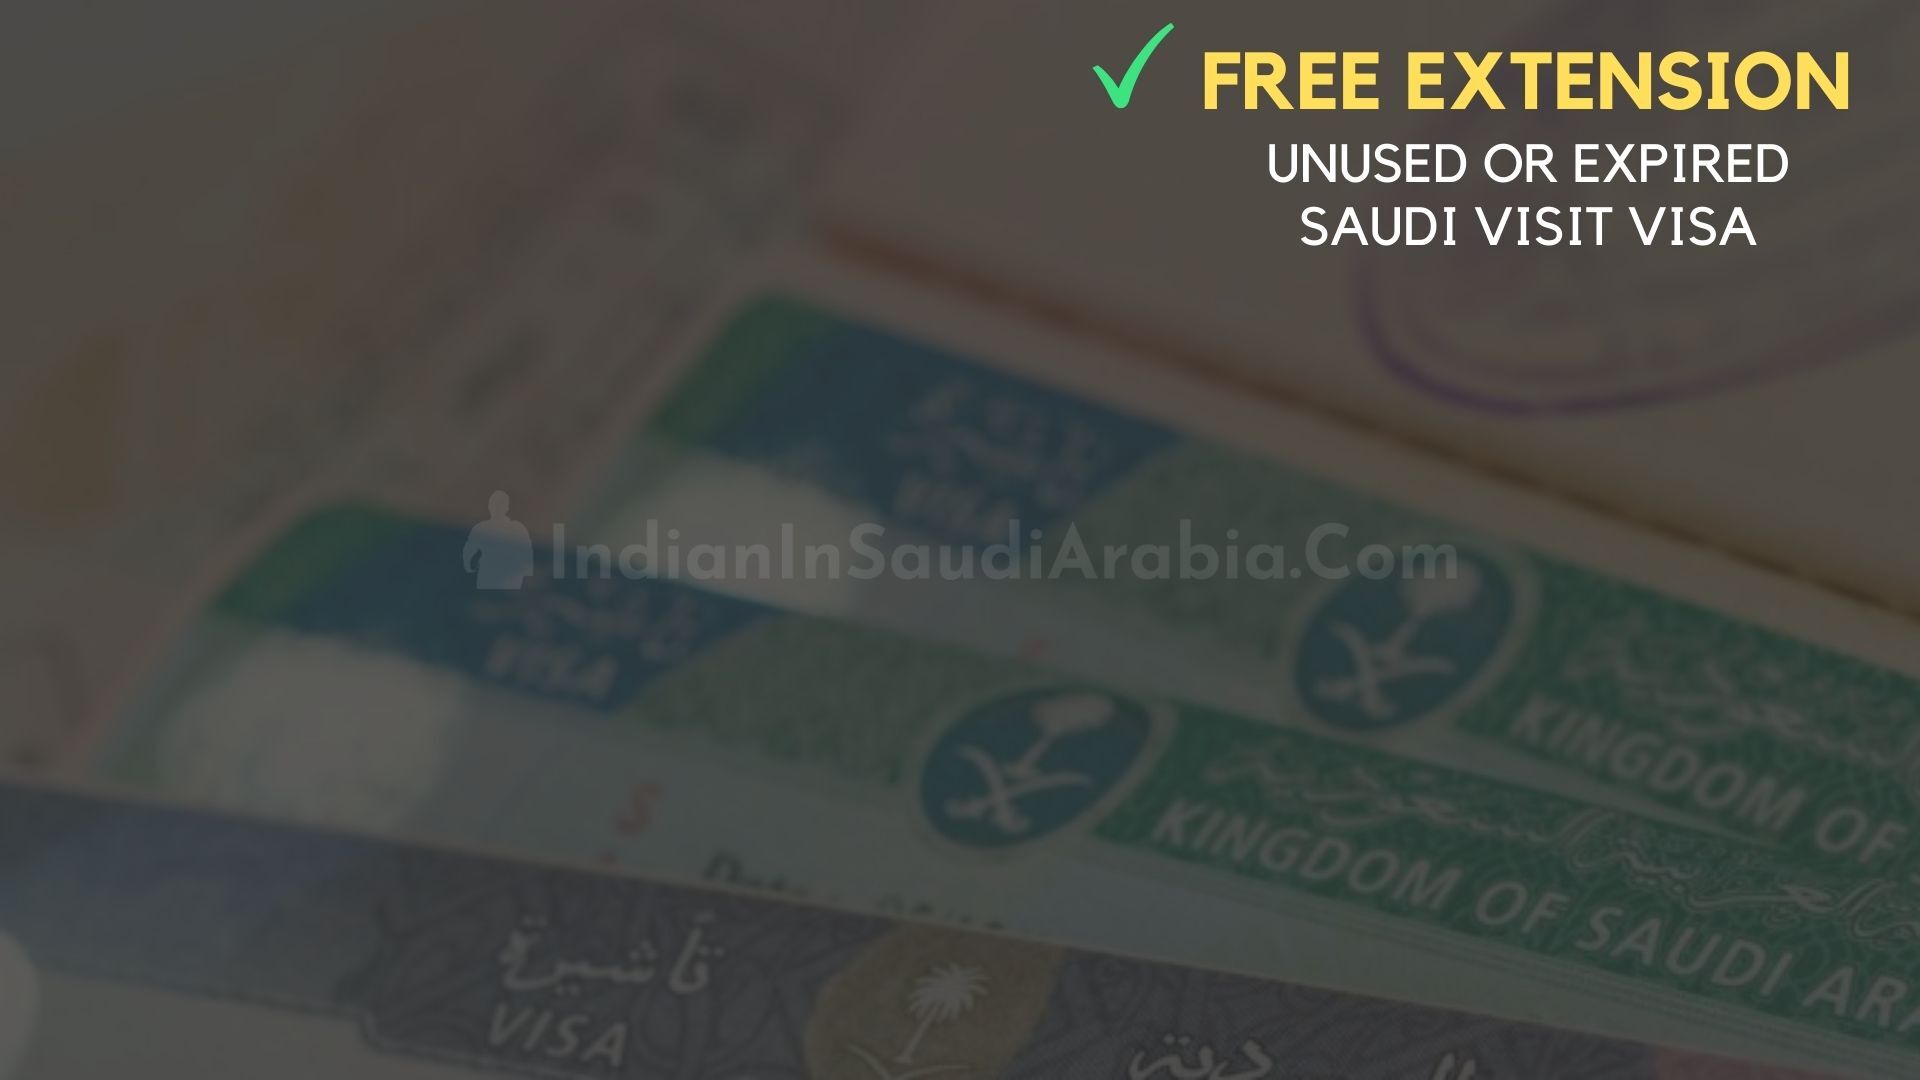 visit visa expired saudi arabia